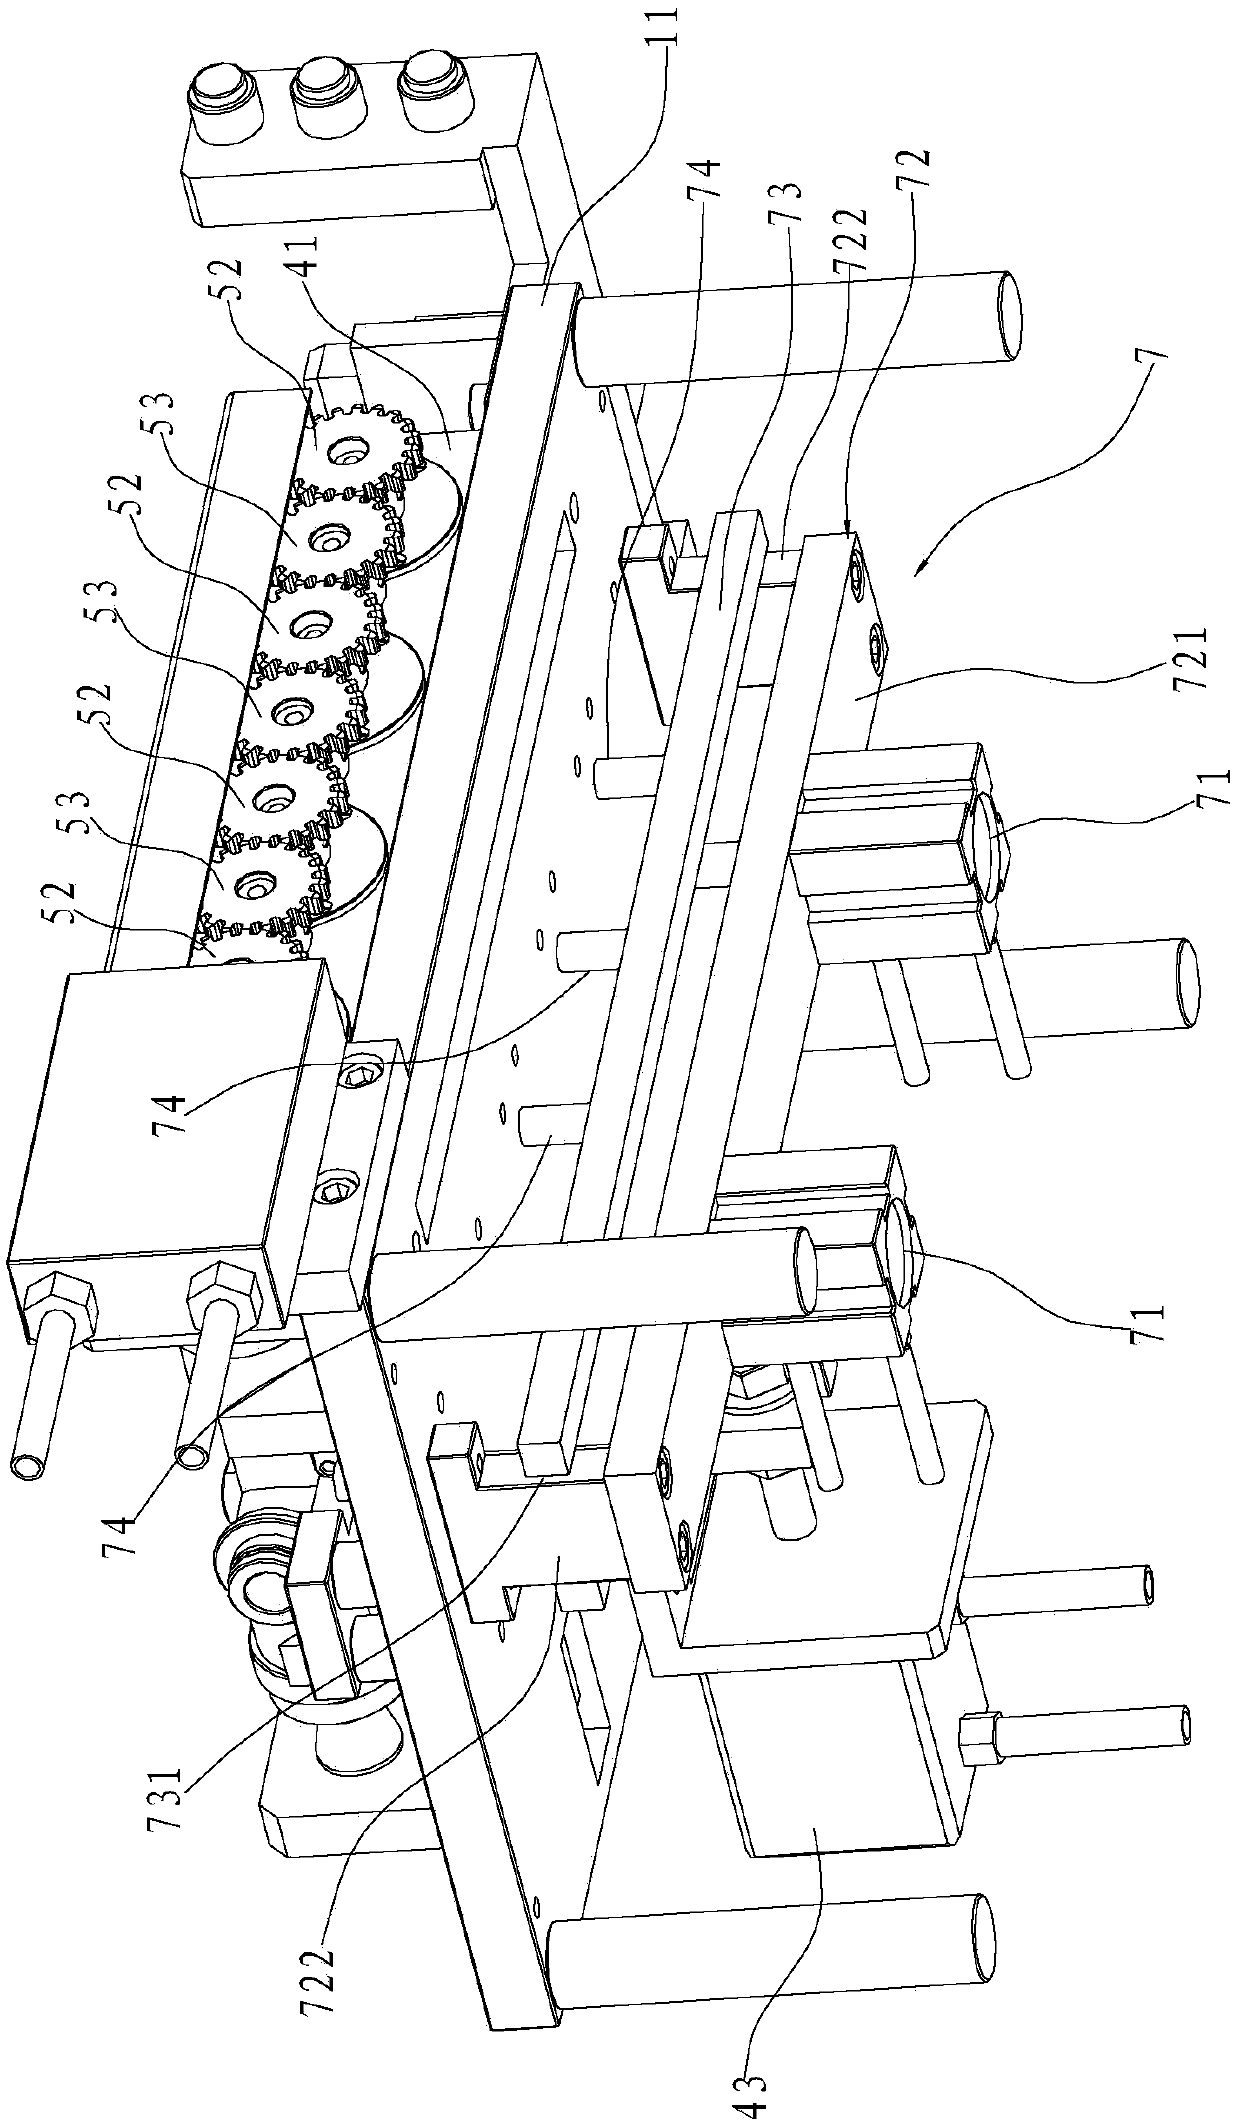 External circulation pump assembly tool